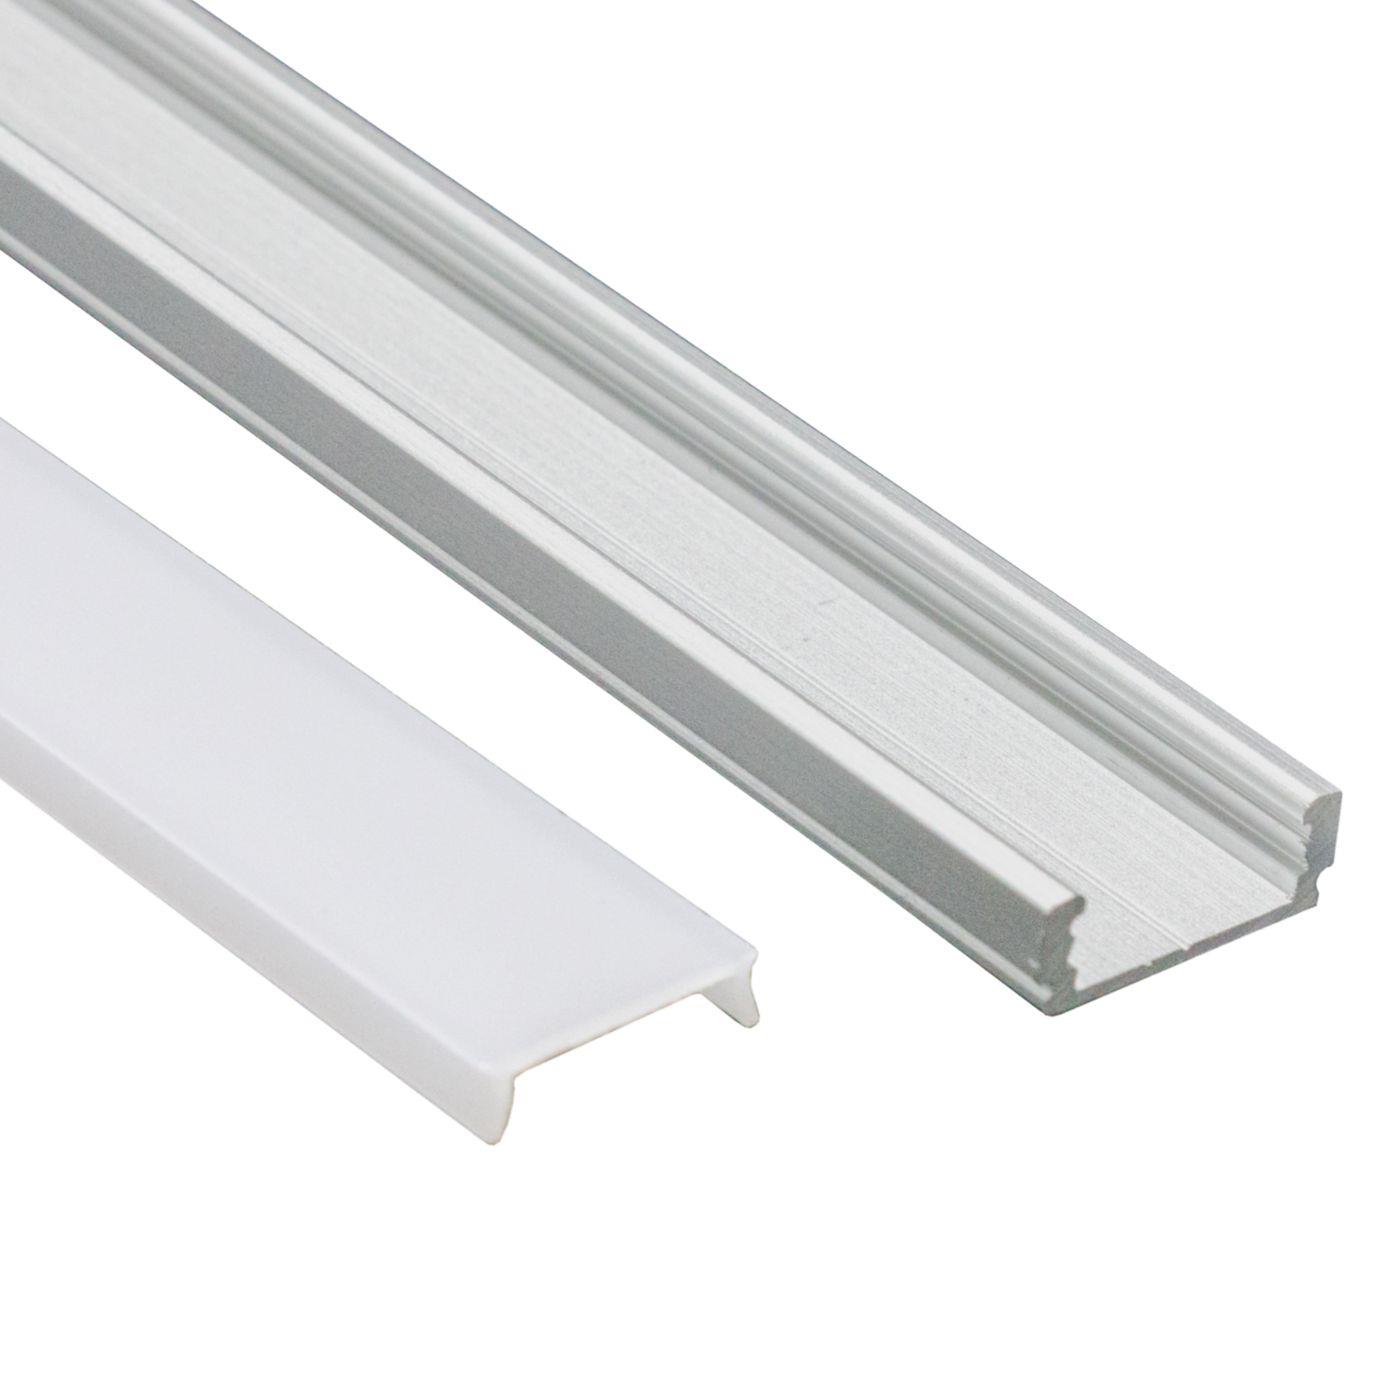 LED surface mount profile set 6m aluminum Silver matte cover + Accessories 12mm strip